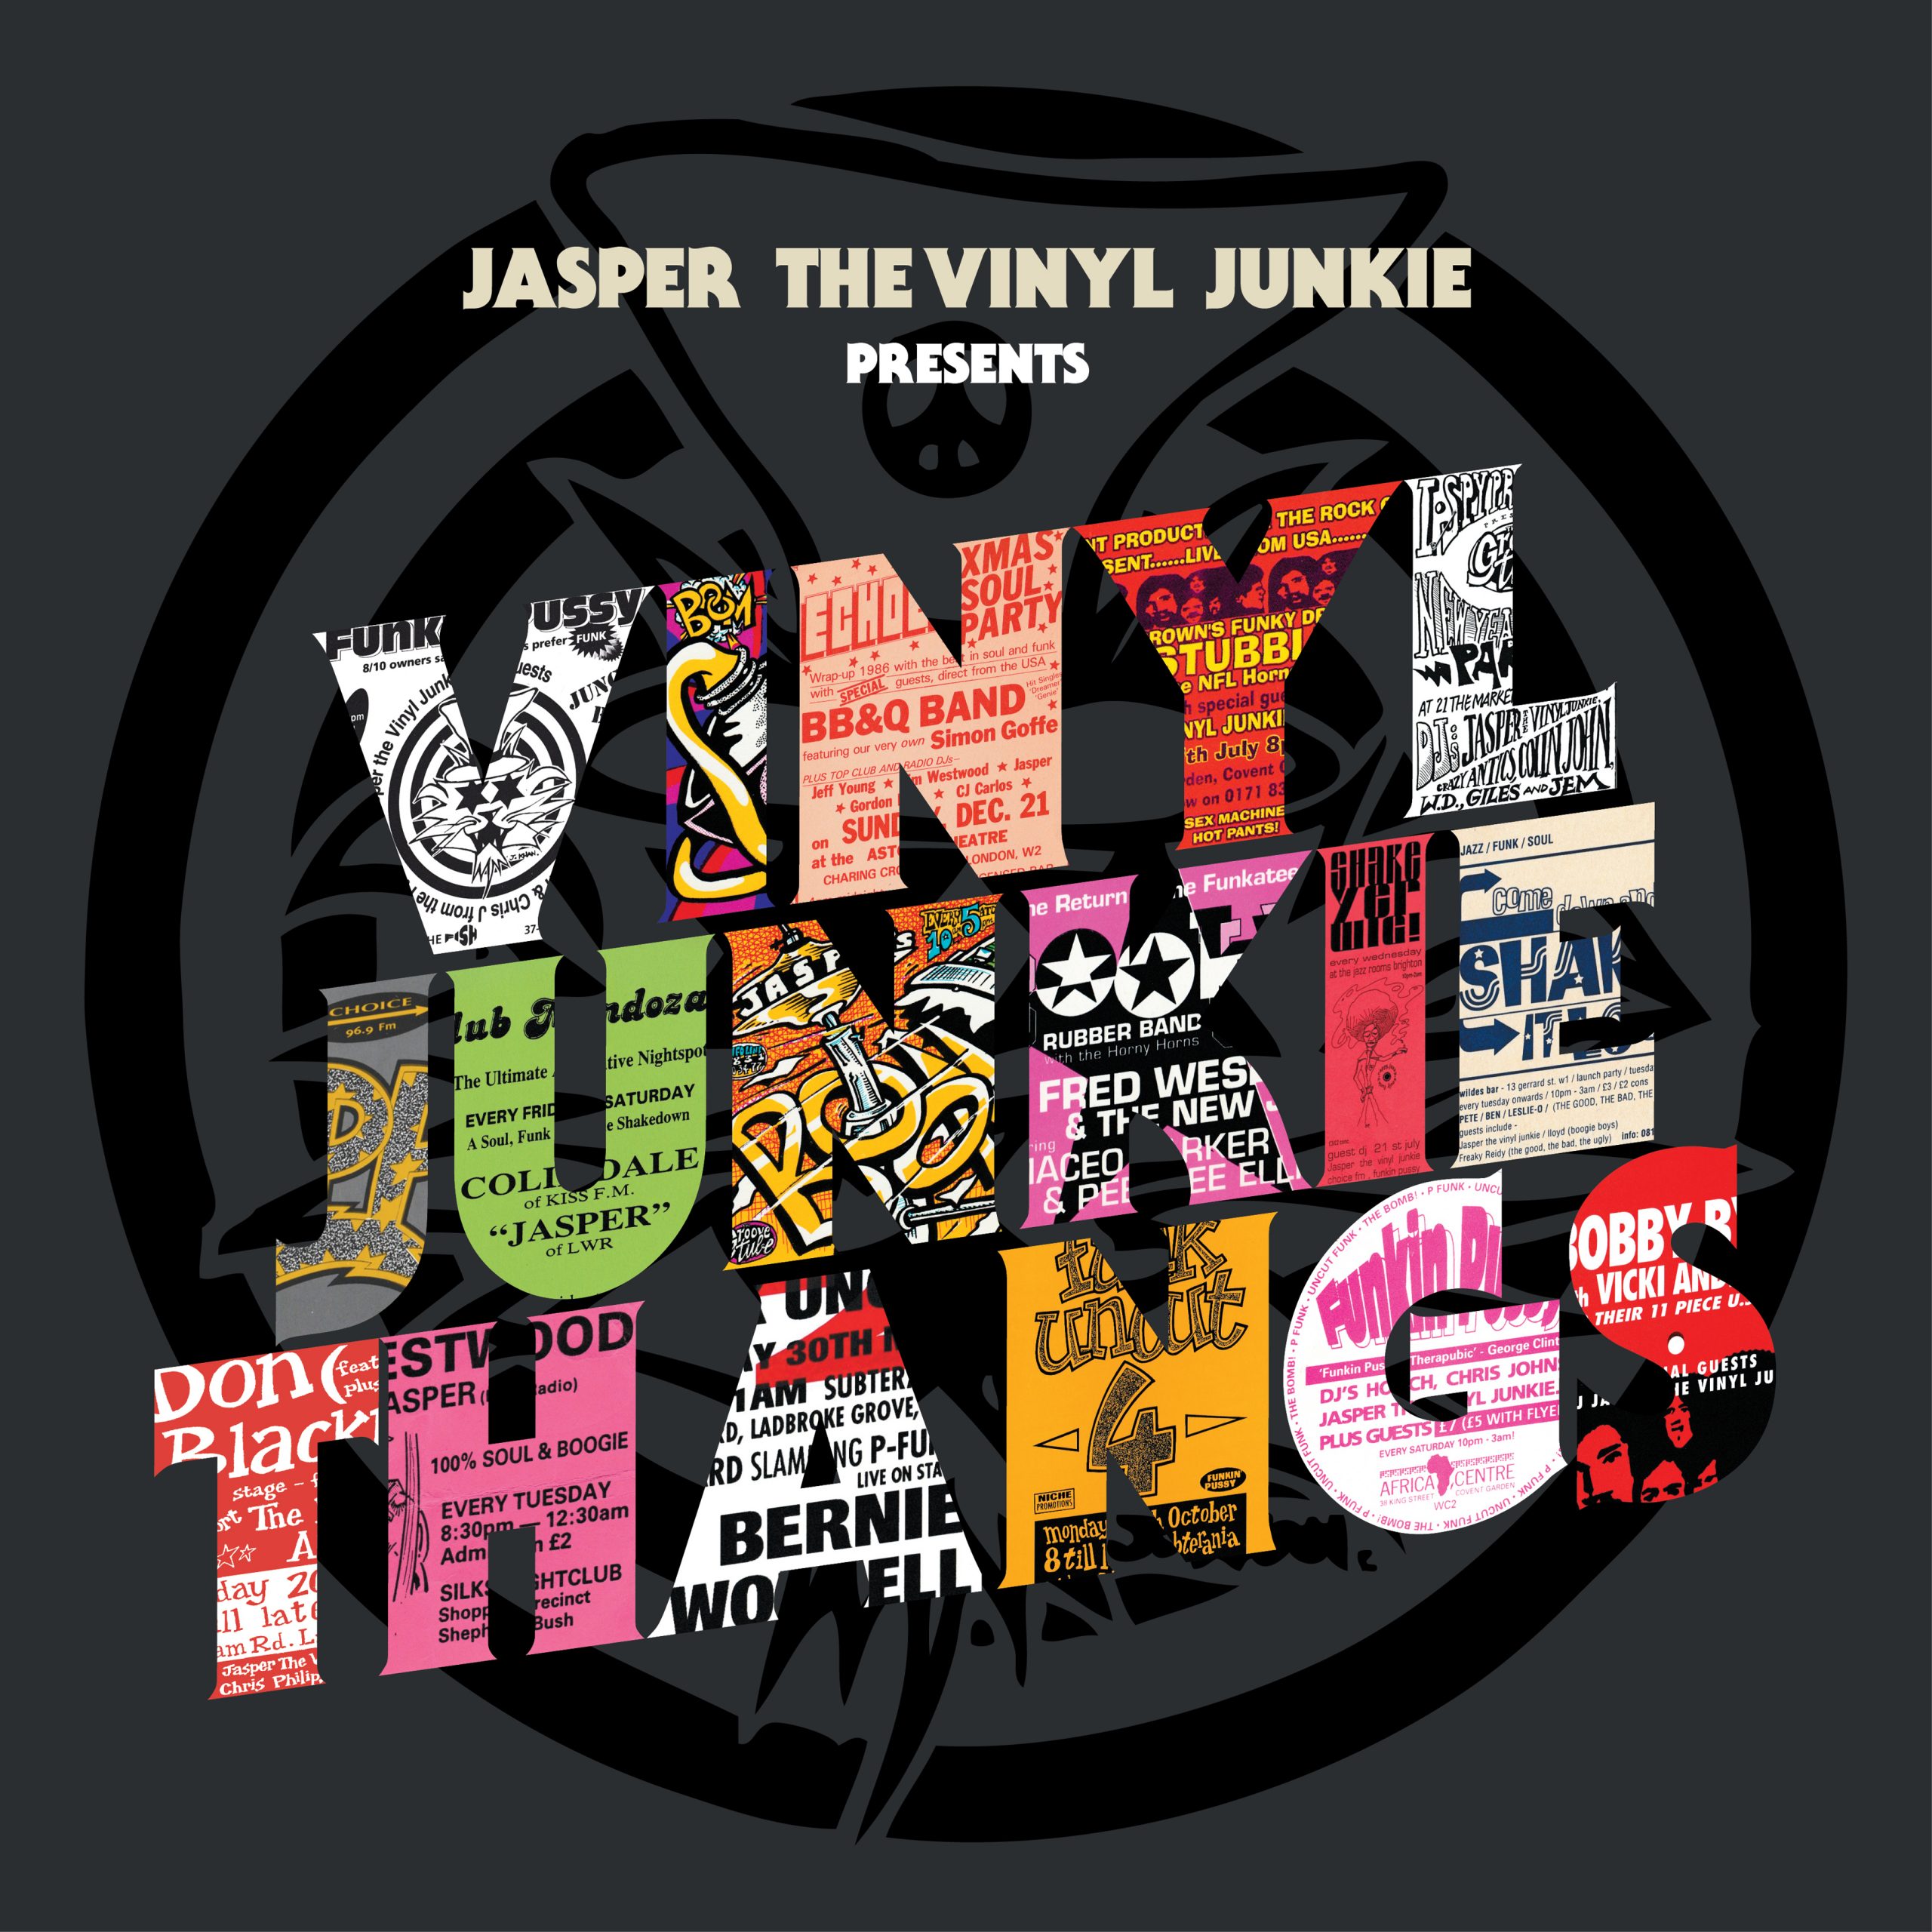 Jasper The Vinyl Junkie presents: Vinyl Junkie Thangs - 3LP+7